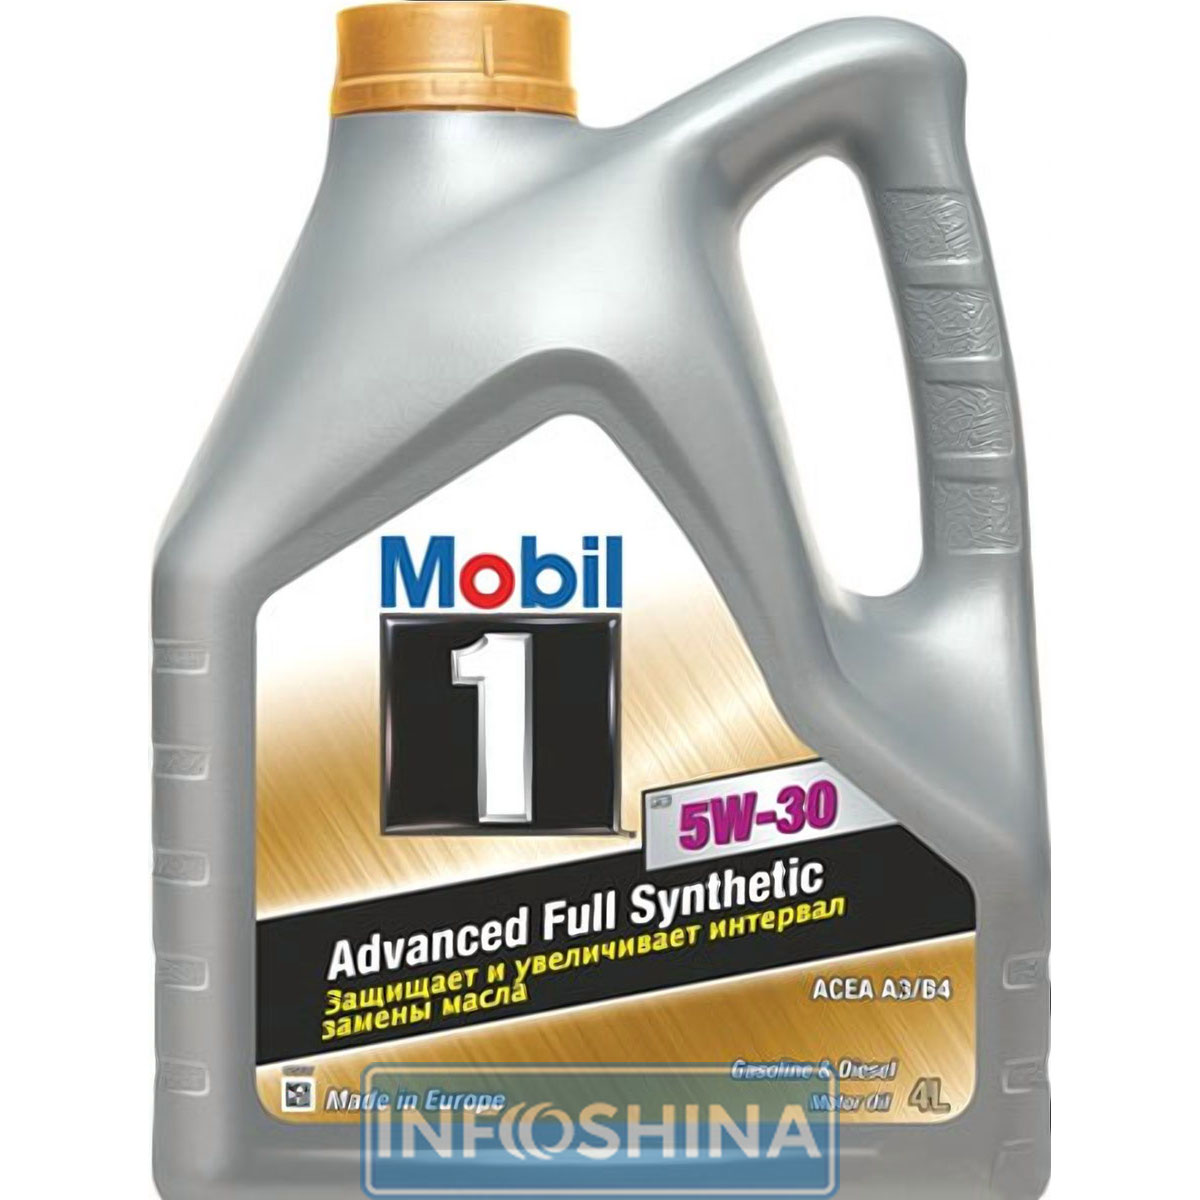 Купить масло Mobil 1 FS 5W-30 (4л)